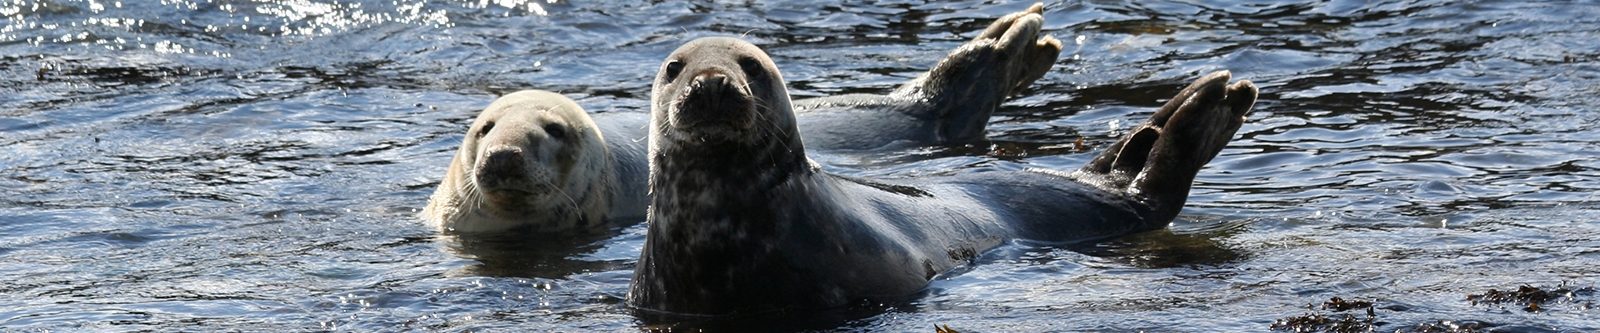 Atlantic grey seals